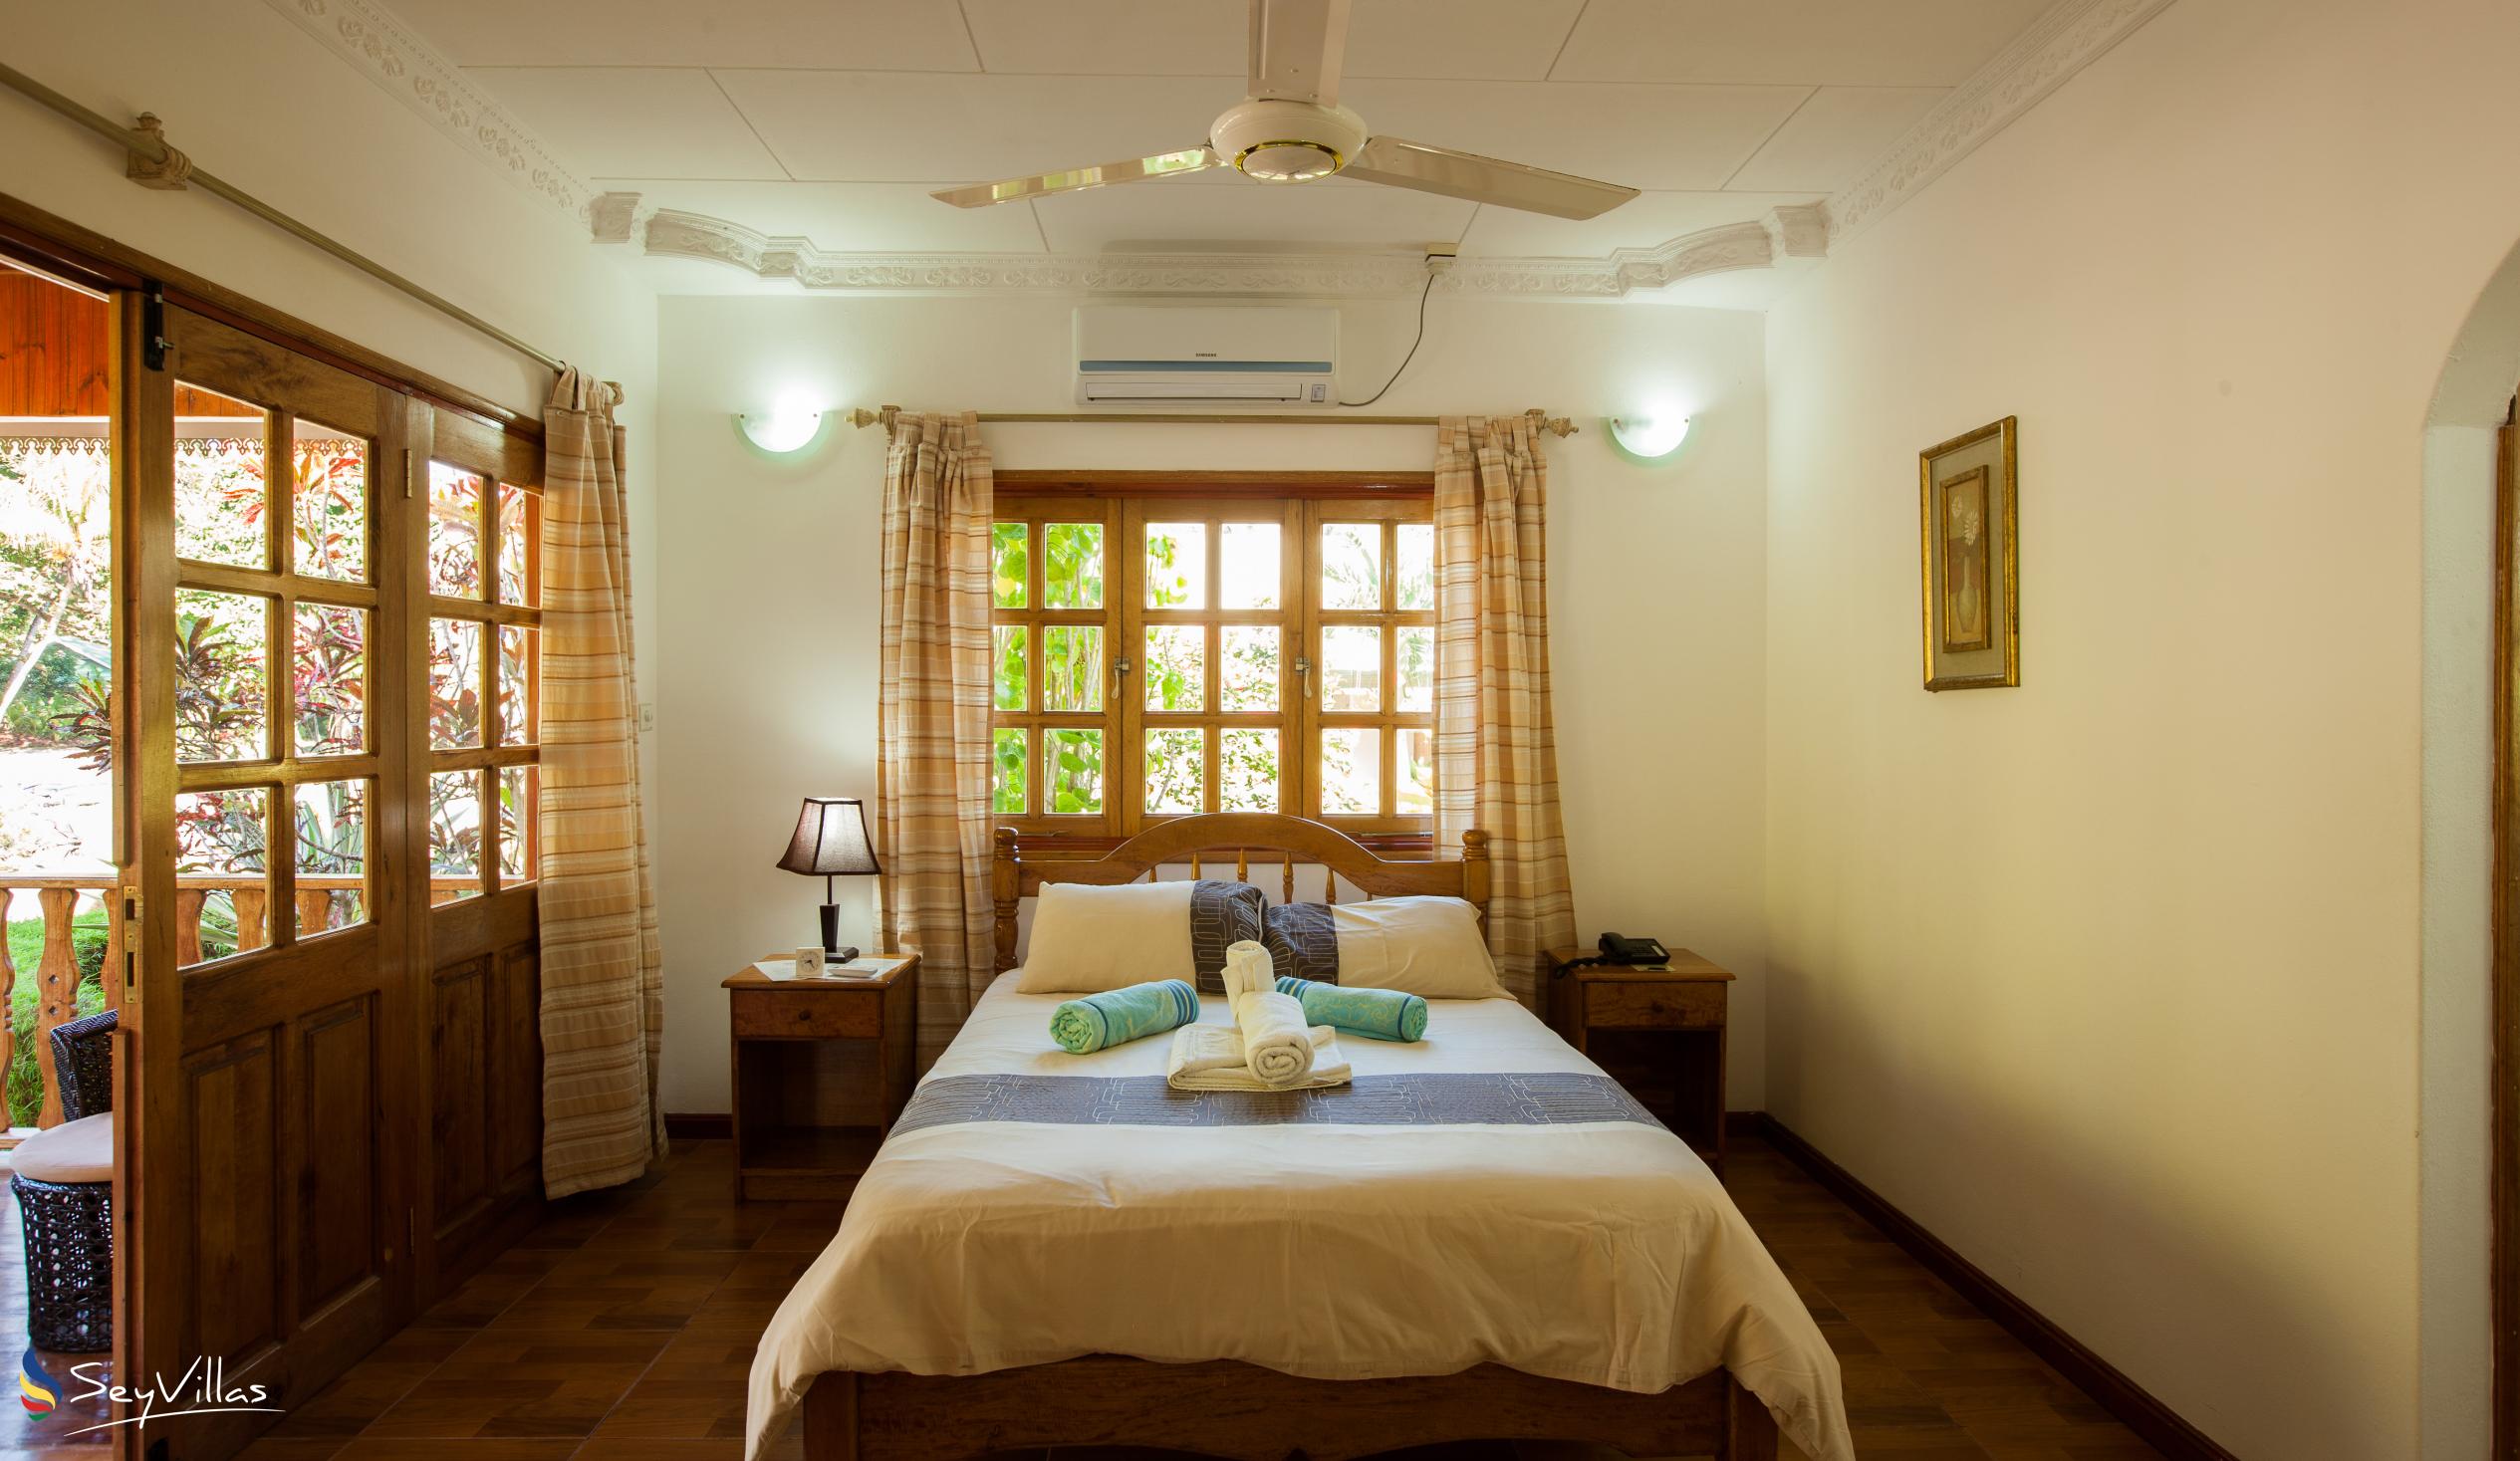 Photo 48: Casa de Leela - 2-Bedroom Bungalow - La Digue (Seychelles)